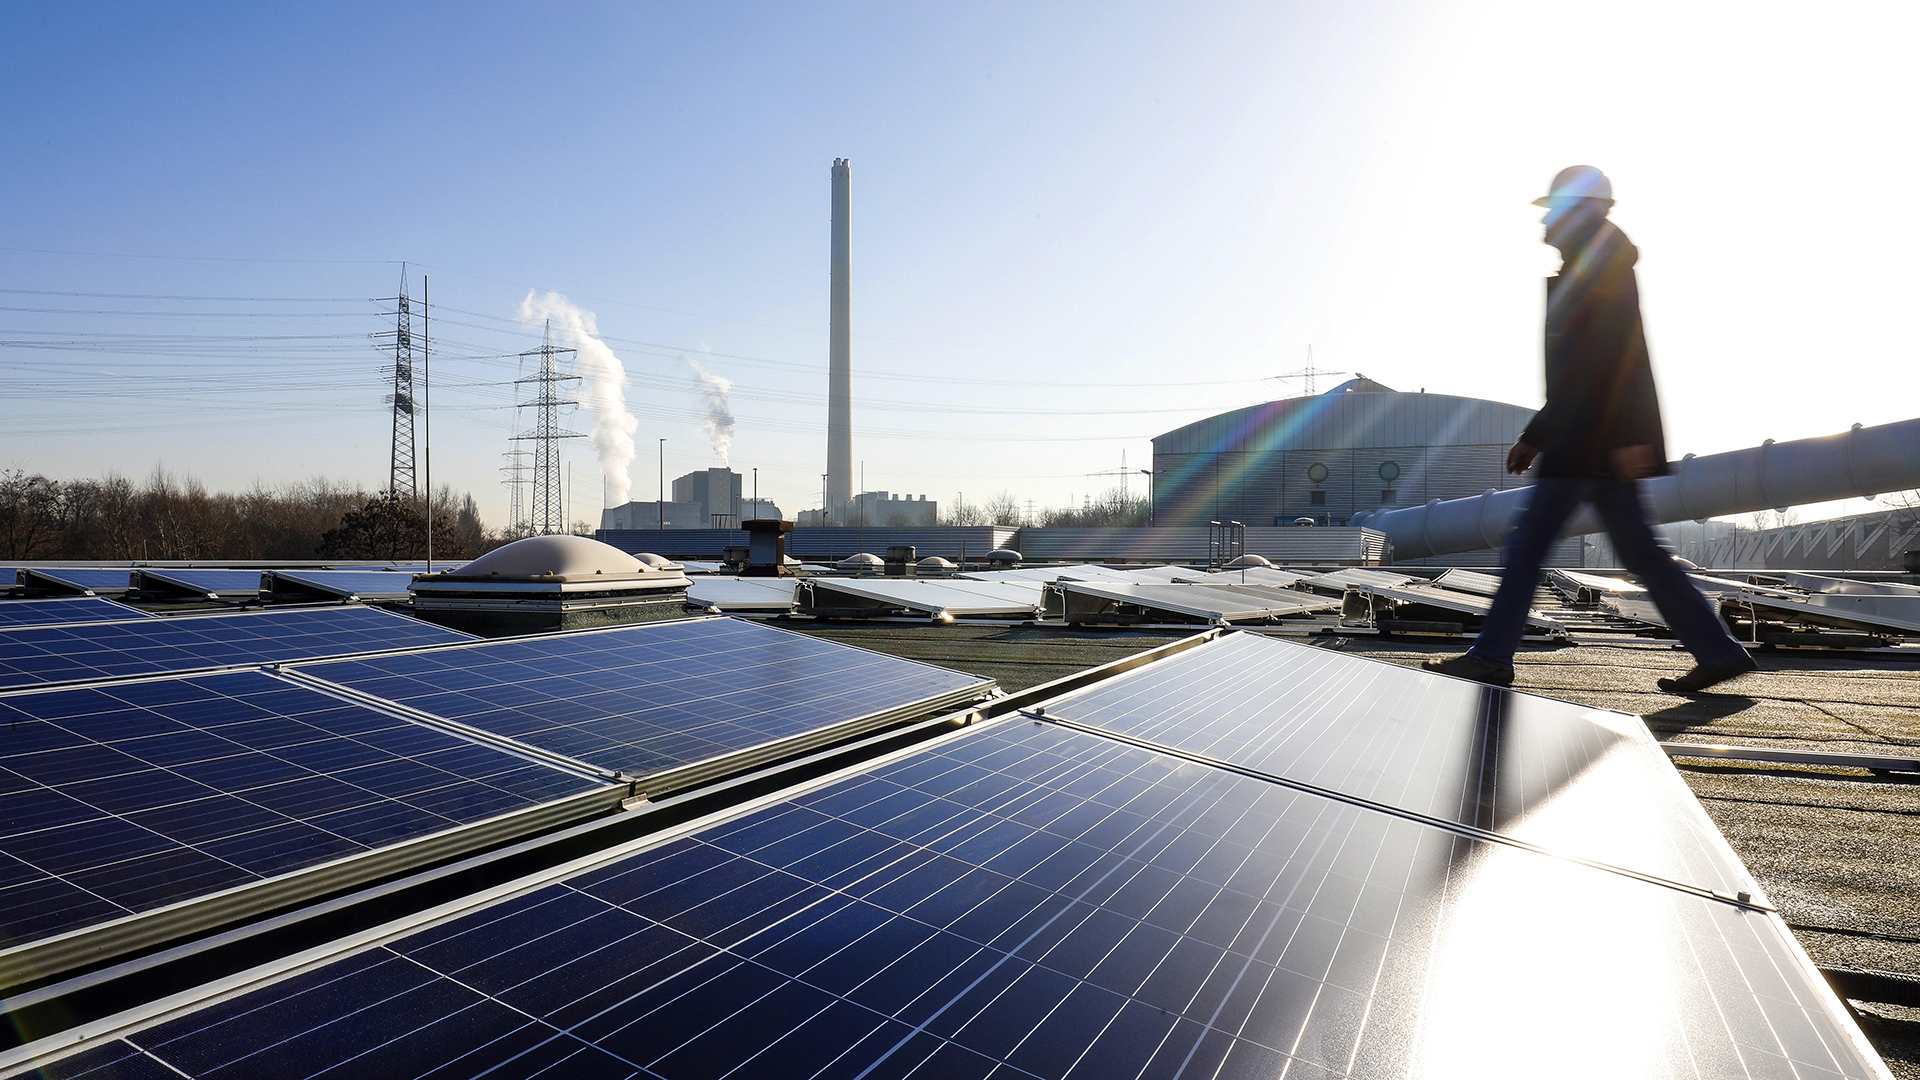 Photovoltaikanlage auf dem Dach eines Industriegebäudes, Gelände der Kläranlage Bottrop | picture alliance / Rupert Oberh